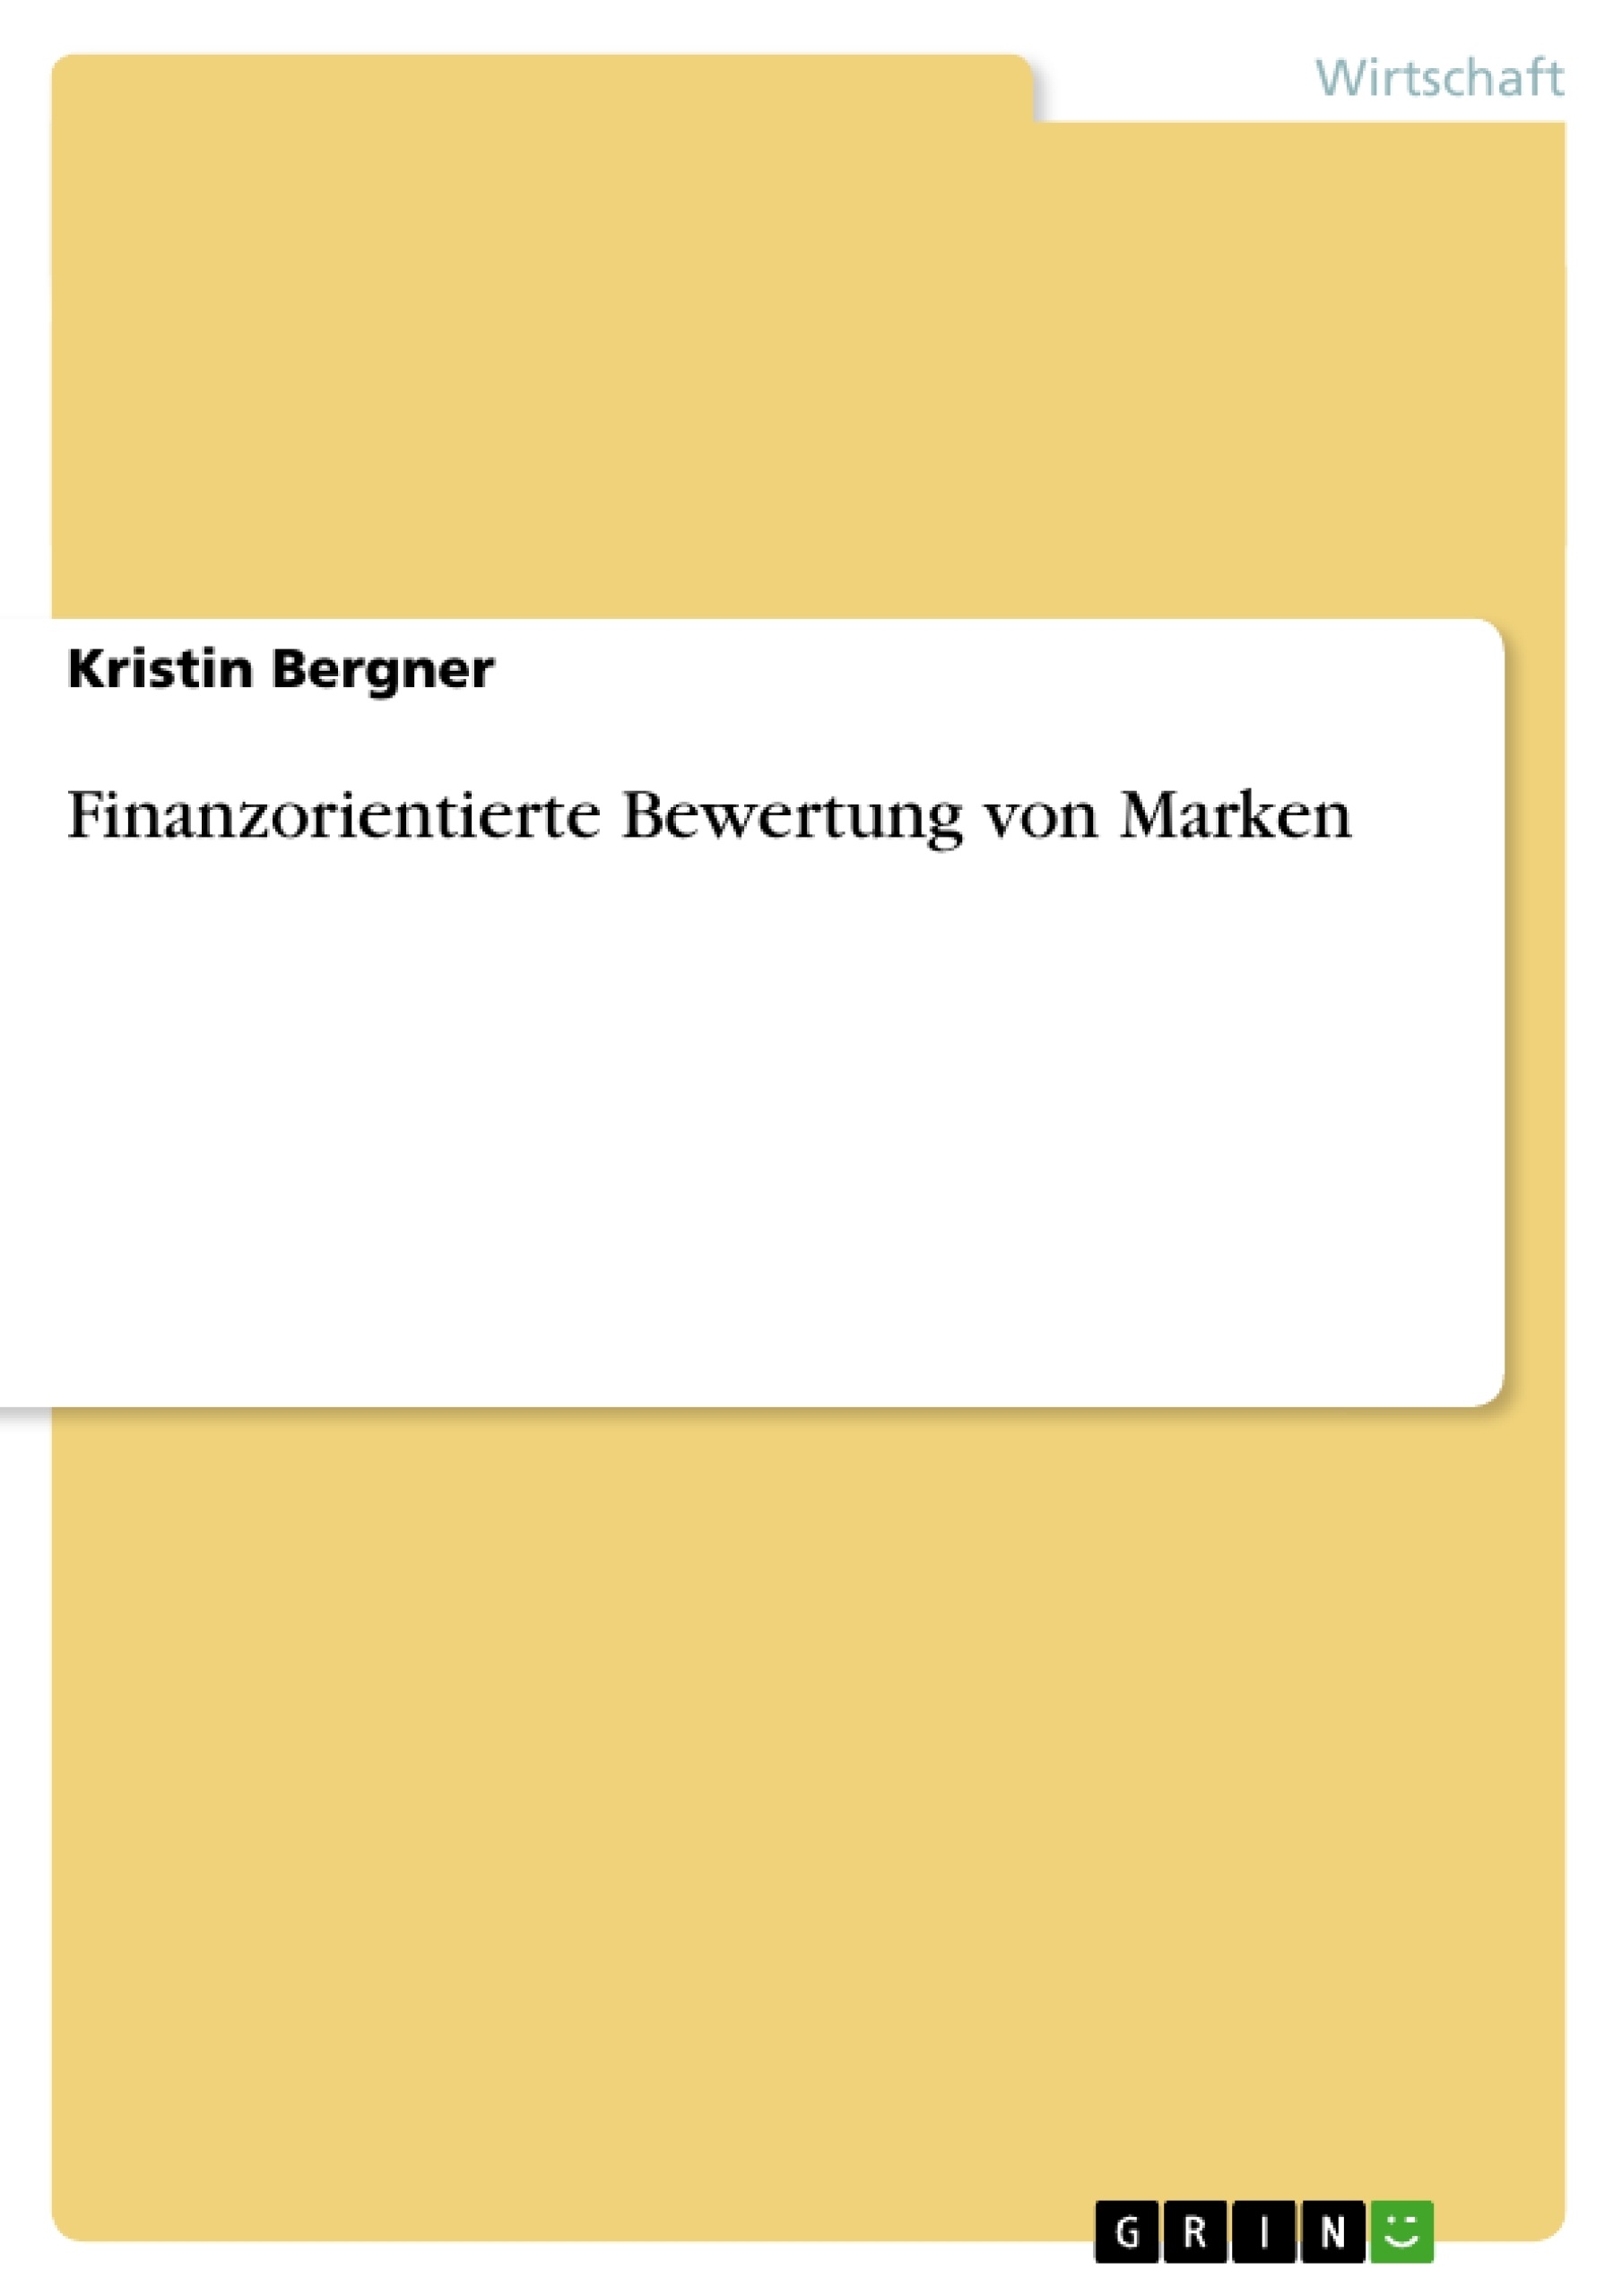 Title: Finanzorientierte Bewertung von Marken